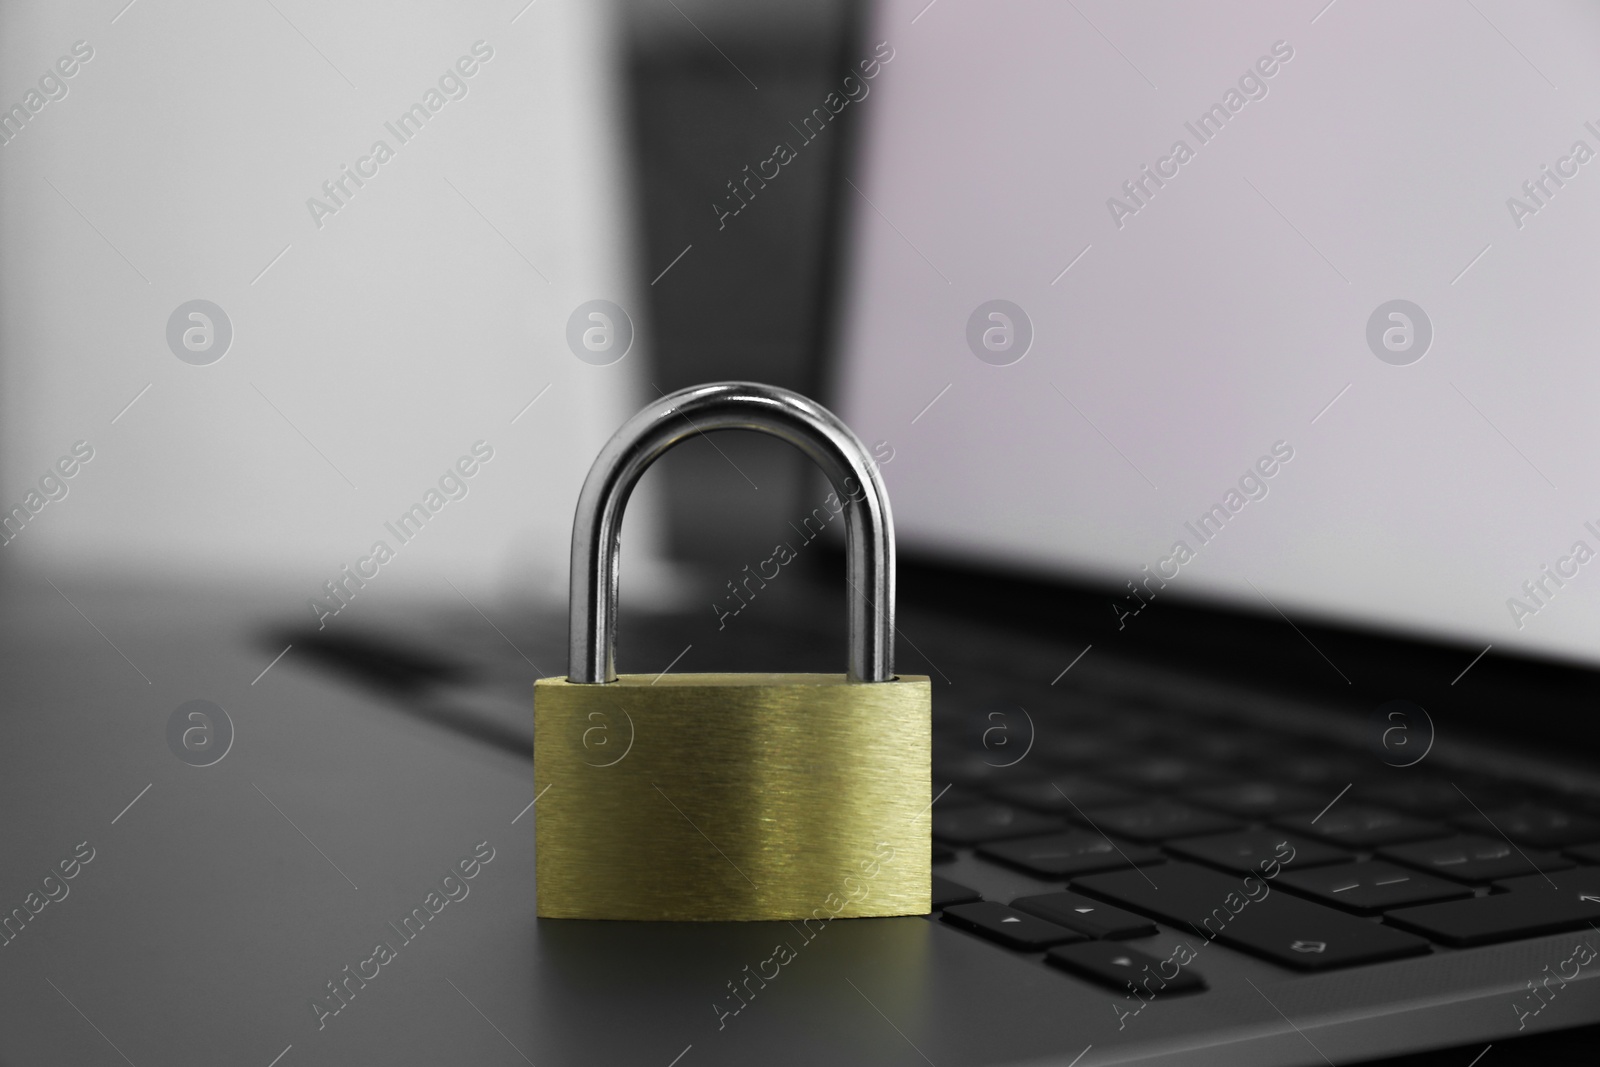 Photo of Cyber security. Metal padlock on laptop, closeup